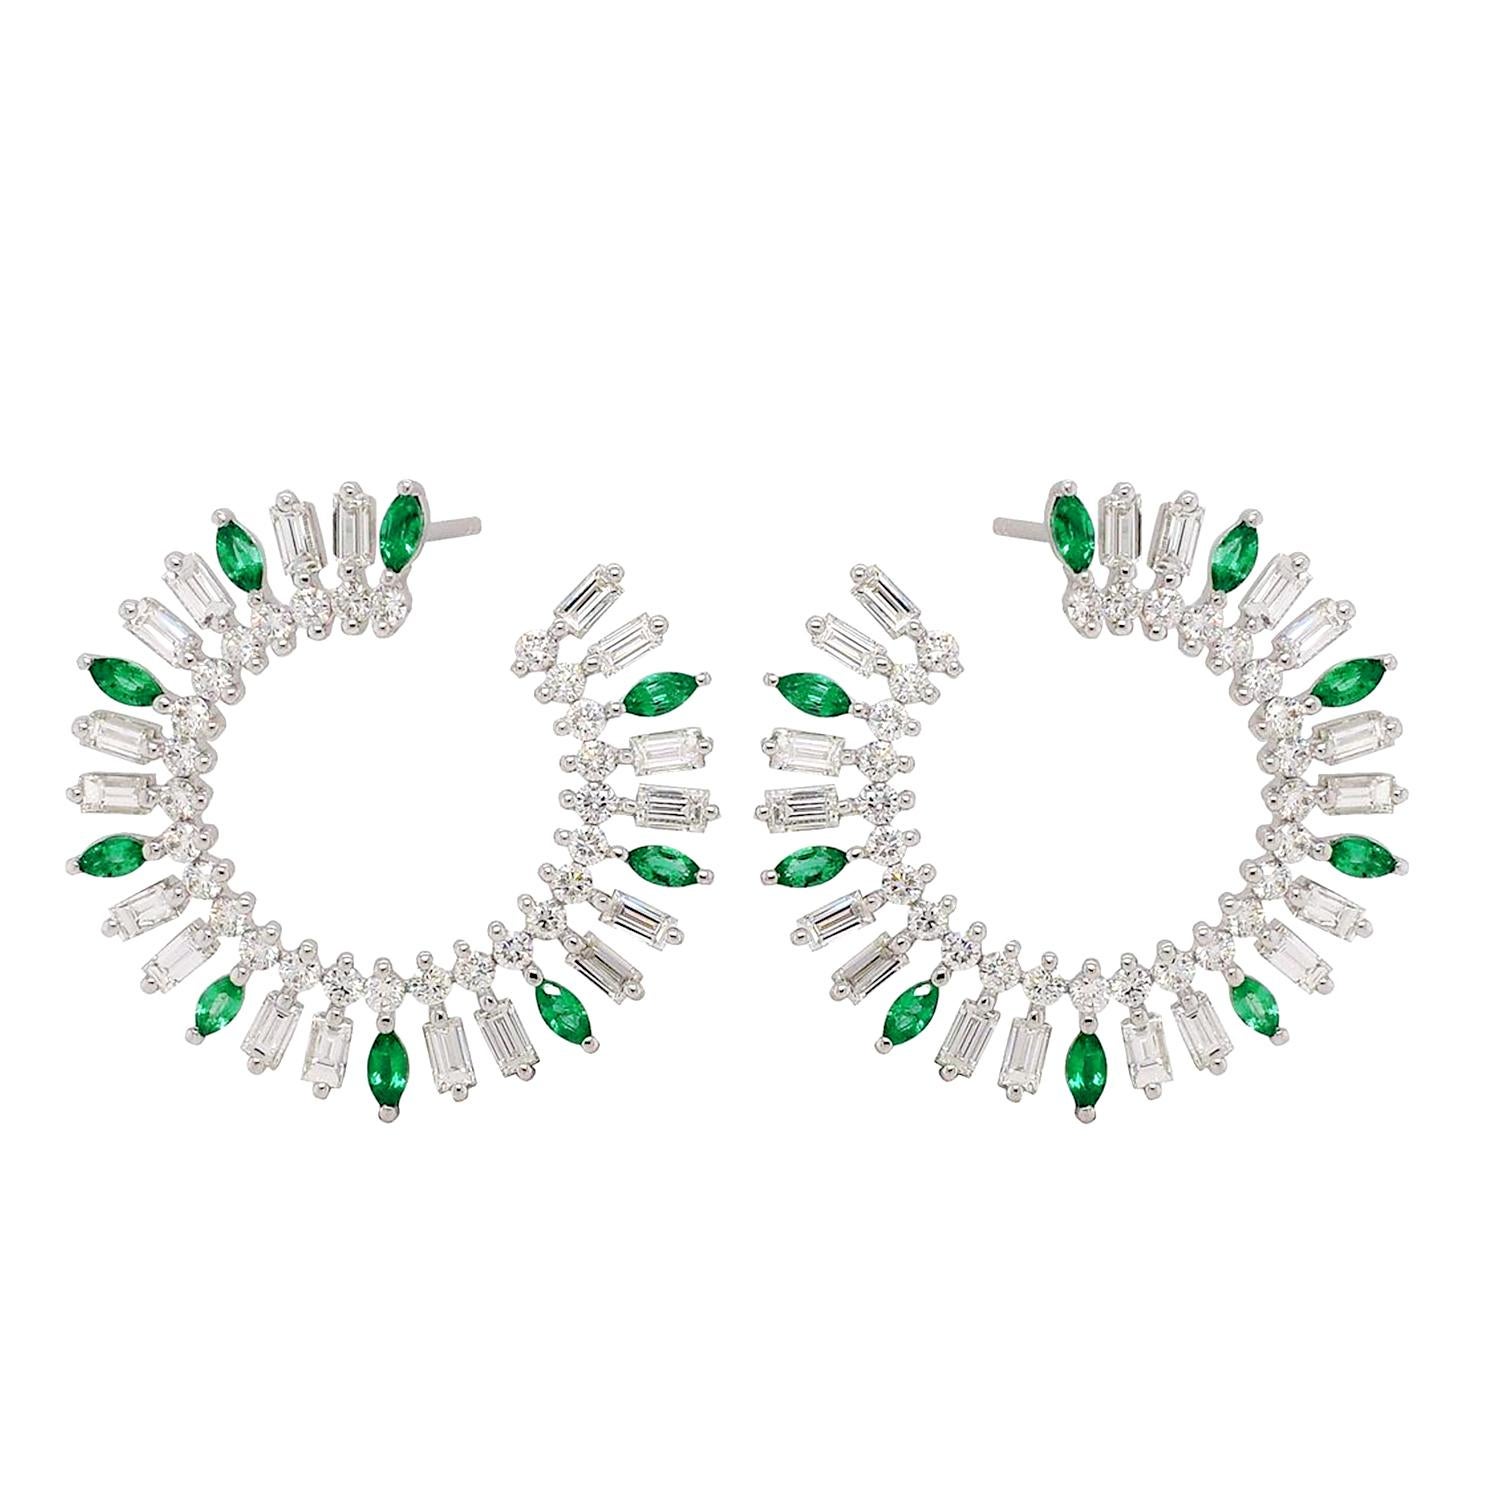 Diese exquisiten Baguette-Ringe mit Smaragd und Diamanten aus 18 Karat Weißgold vereinen klassische Eleganz mit einer modernen Note. Die Reifchen wurden sorgfältig entworfen, um eine nahtlose Mischung aus kostbaren Edelsteinen und feiner